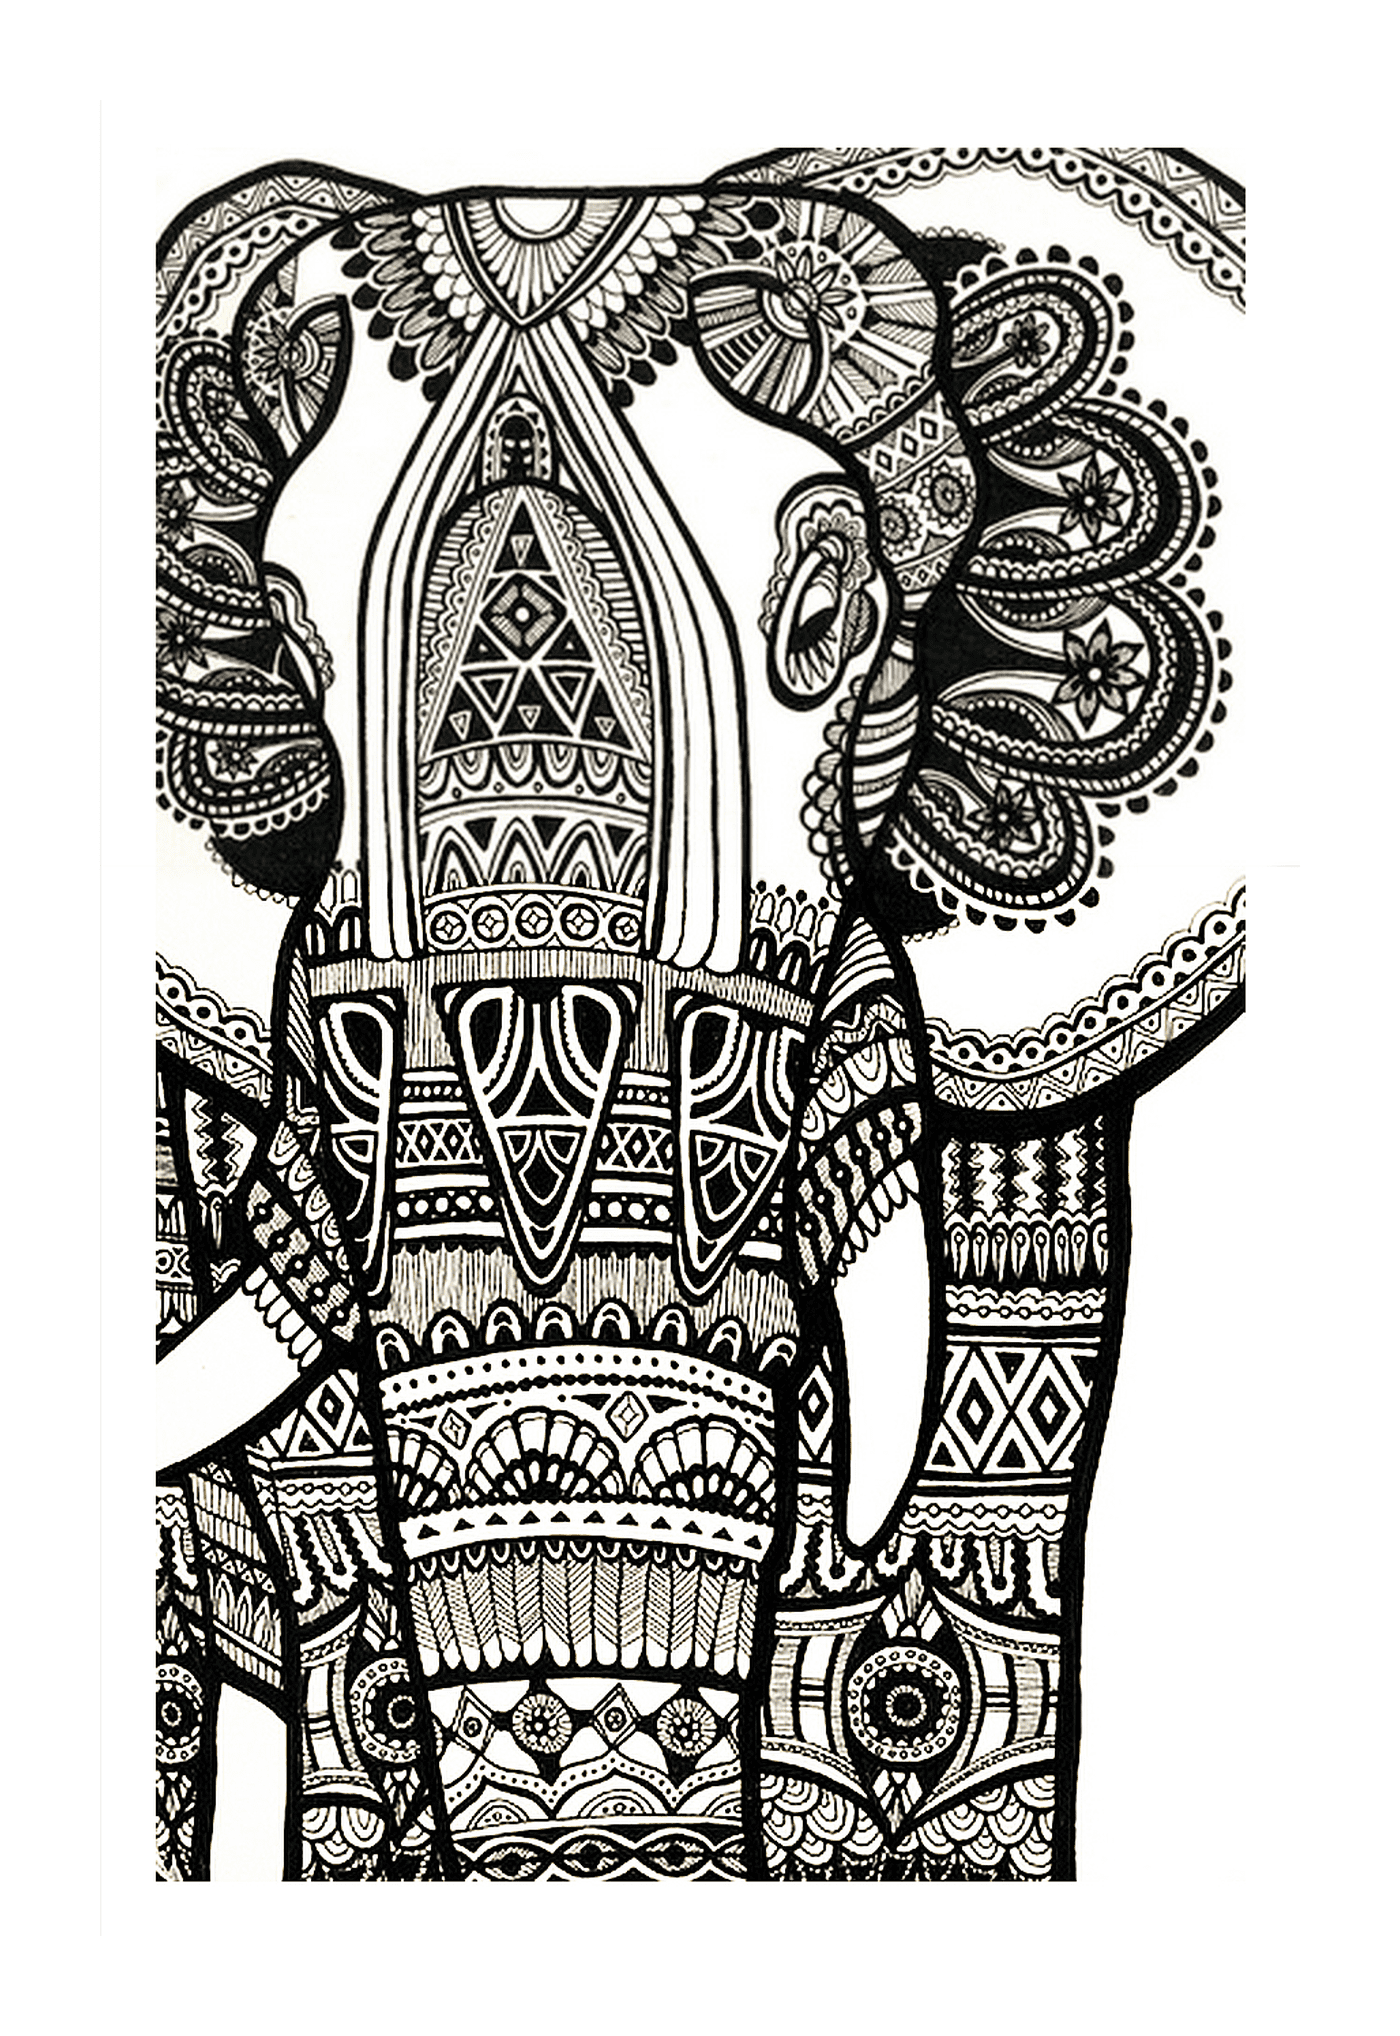  Un dibujo complejo con un elefante indio 